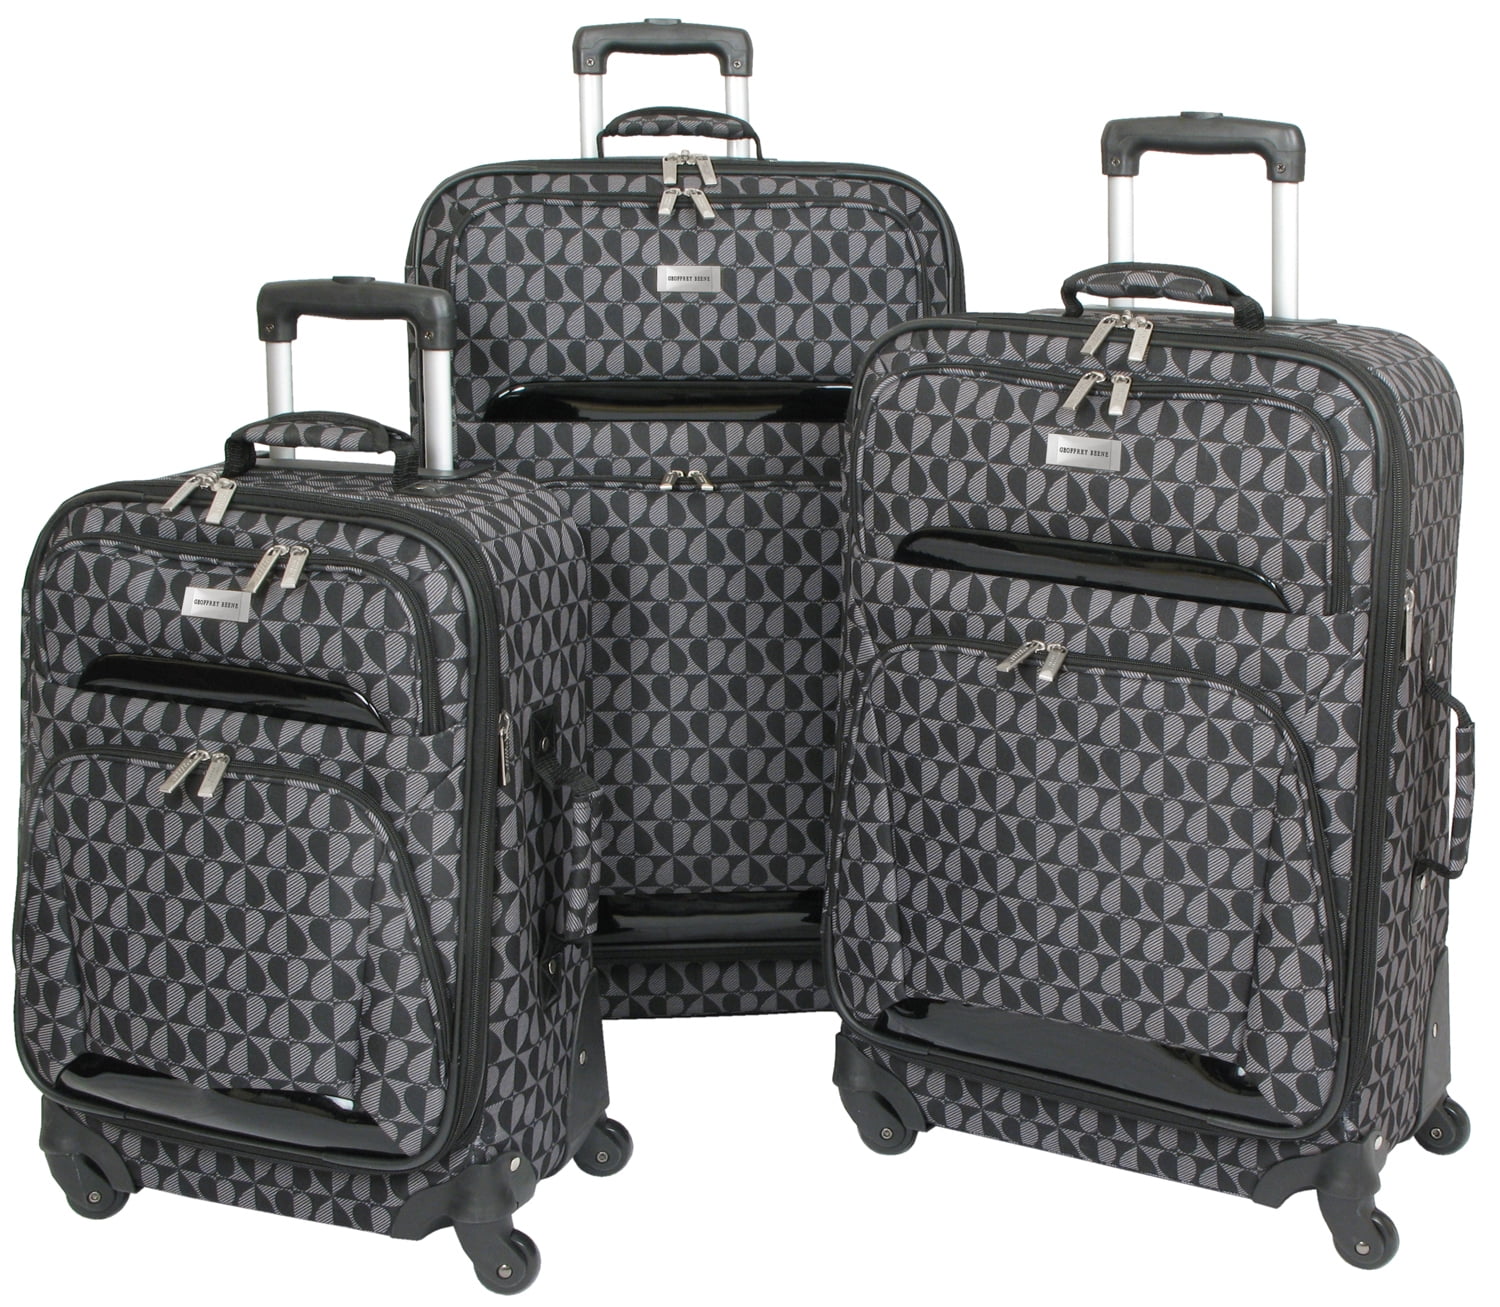 Geoffrey Beene - Geoffrey Beene Hearts Fashion Collection Luggage Set ...